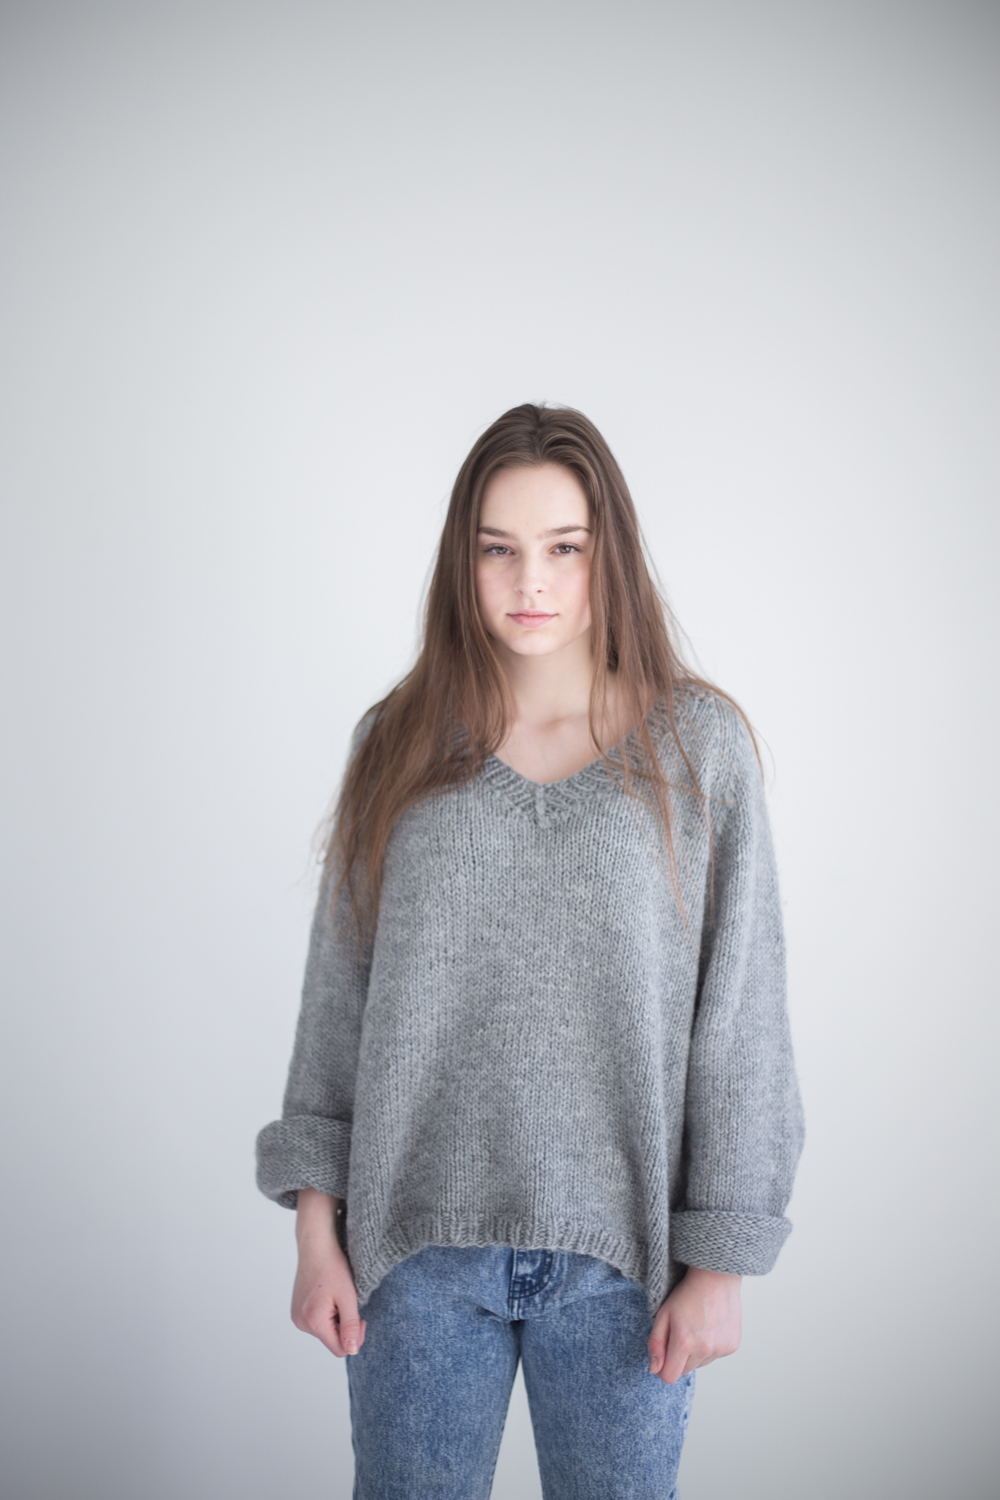 v neck sweater knitting pattern women - Lea Sweater | V-neck sweater knitting kit - by HipKnitShop - 07/05/2018